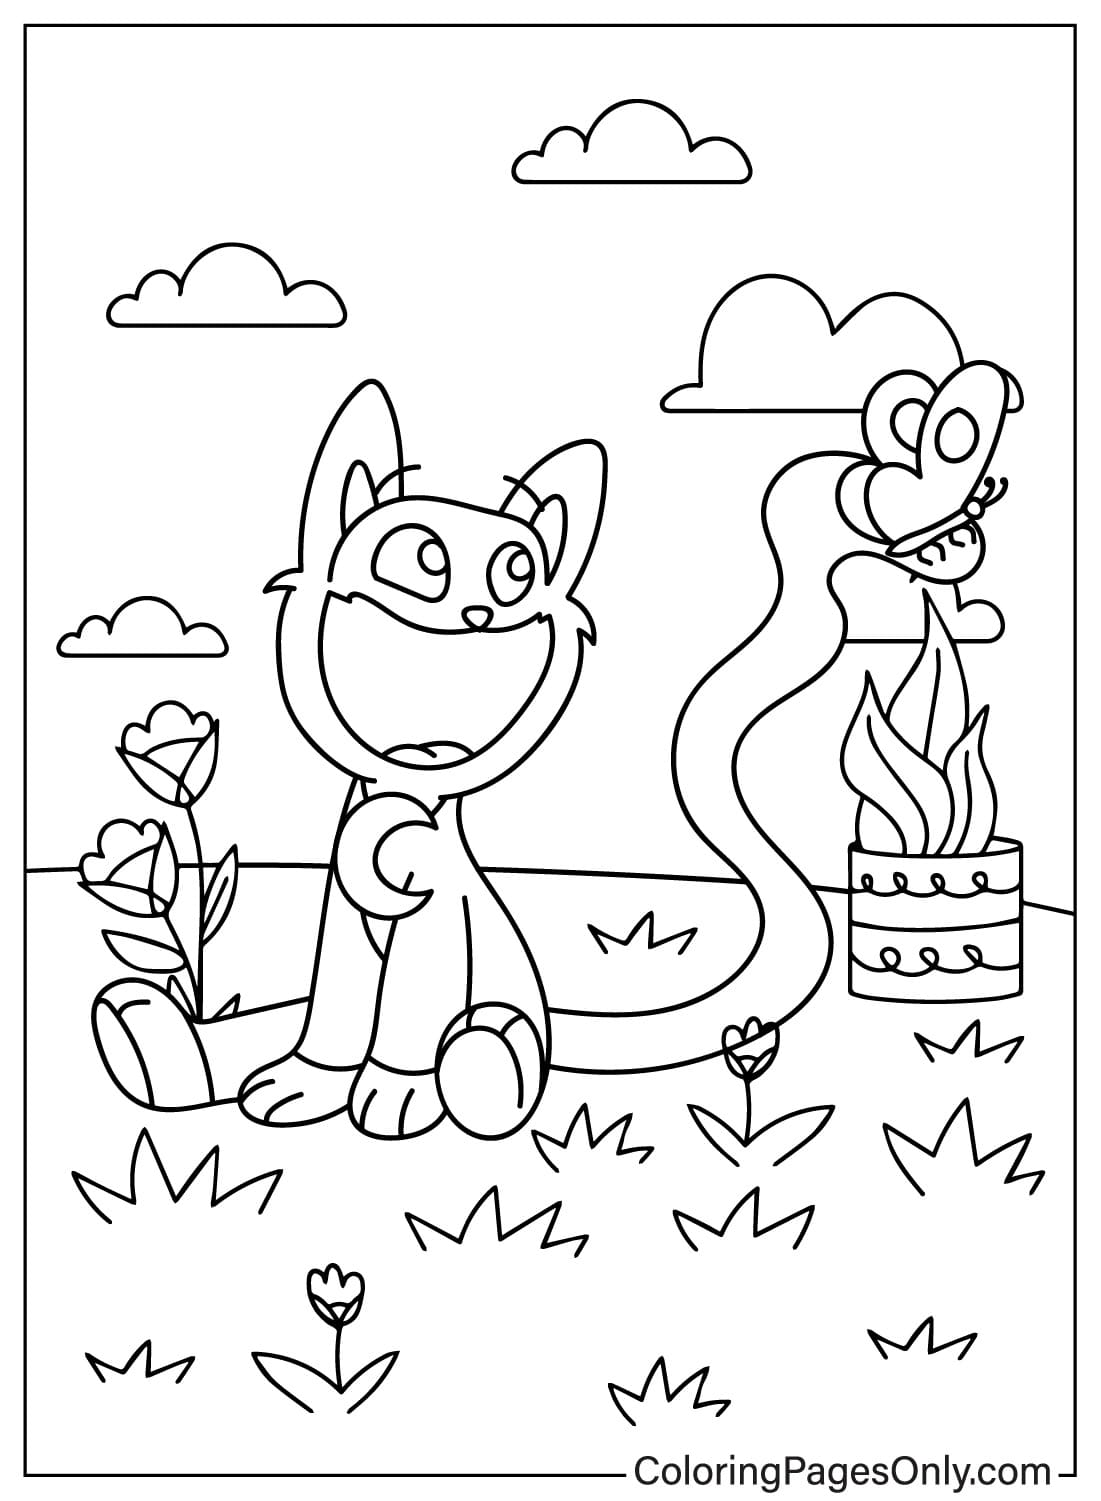 Páginas para colorear de CatNap para niños de CatNap